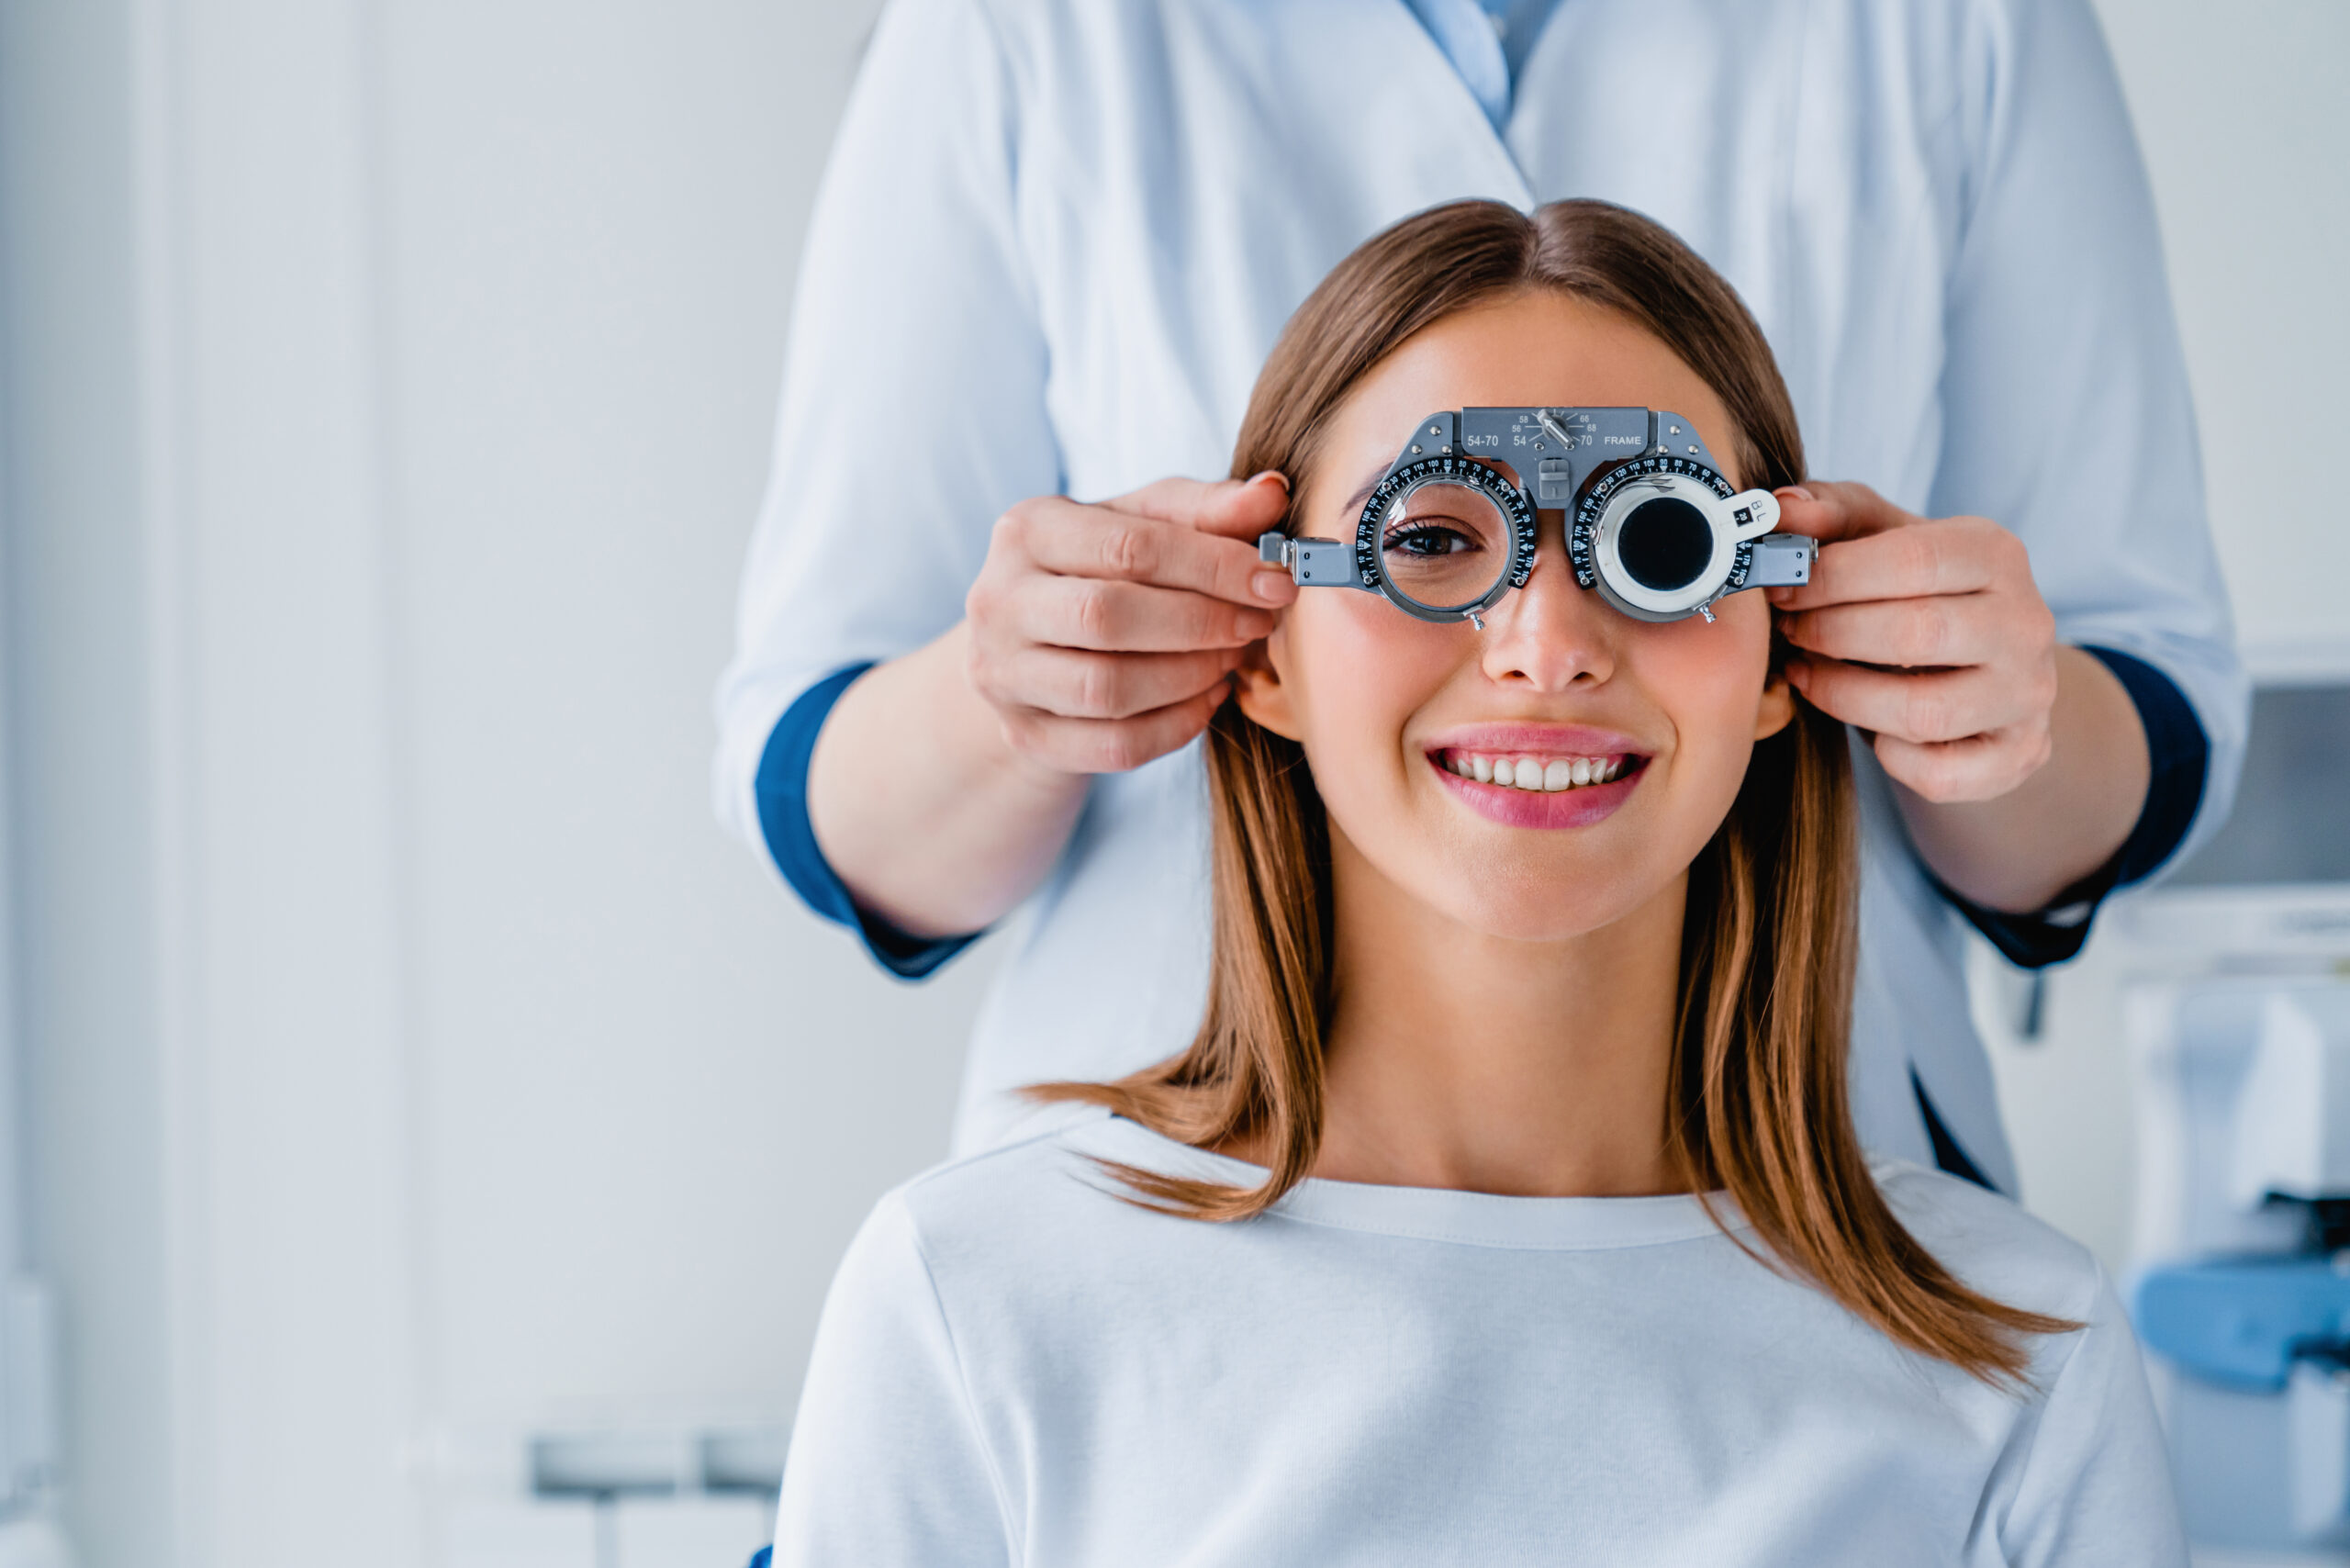 Patientin bekommt eine Messbrille vom Augenarzt aufgesetzt